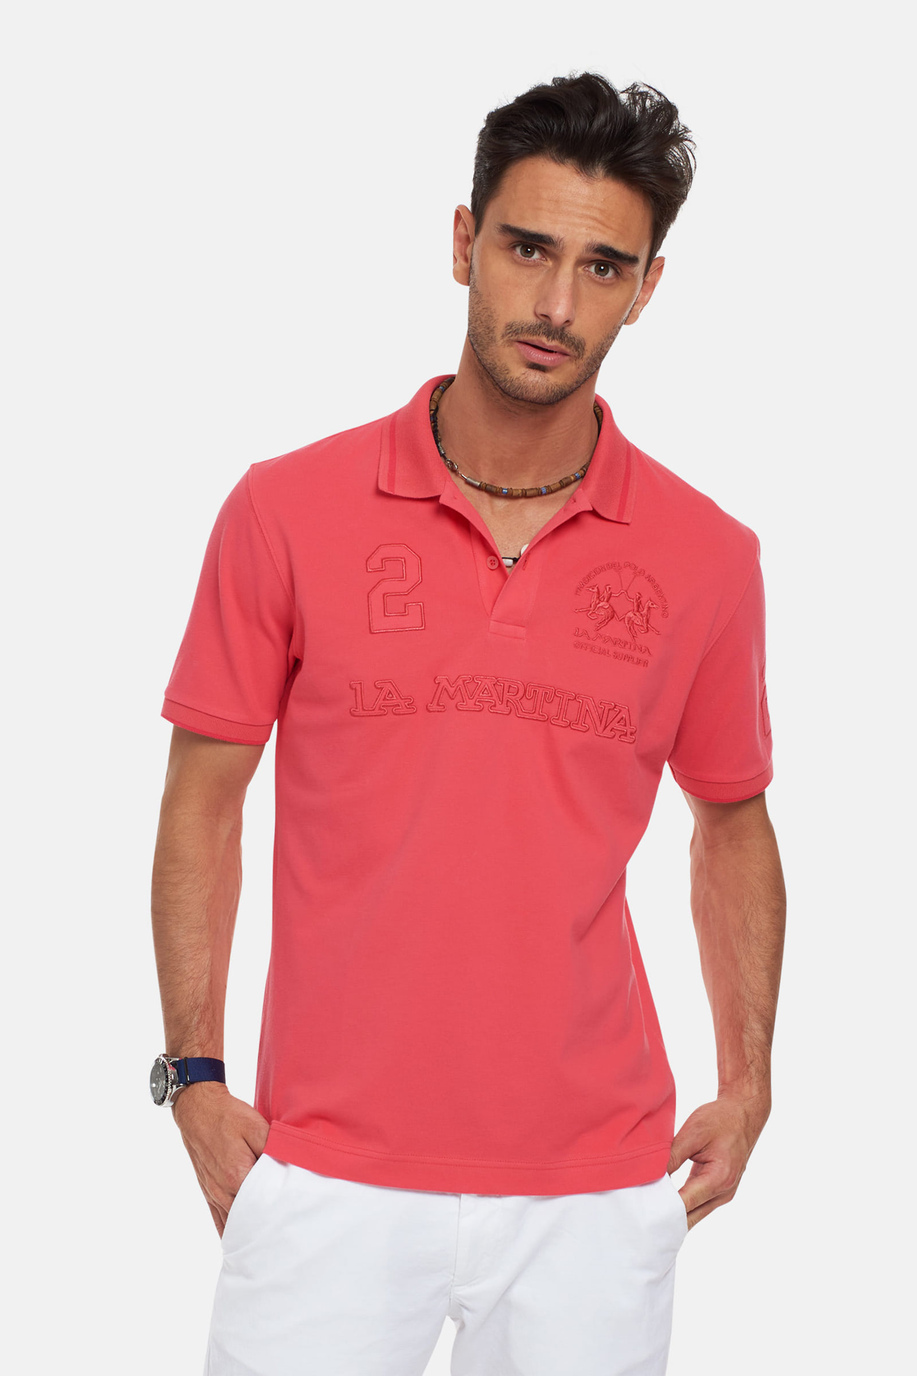 Men's short-sleeved, regular fit polo shirt